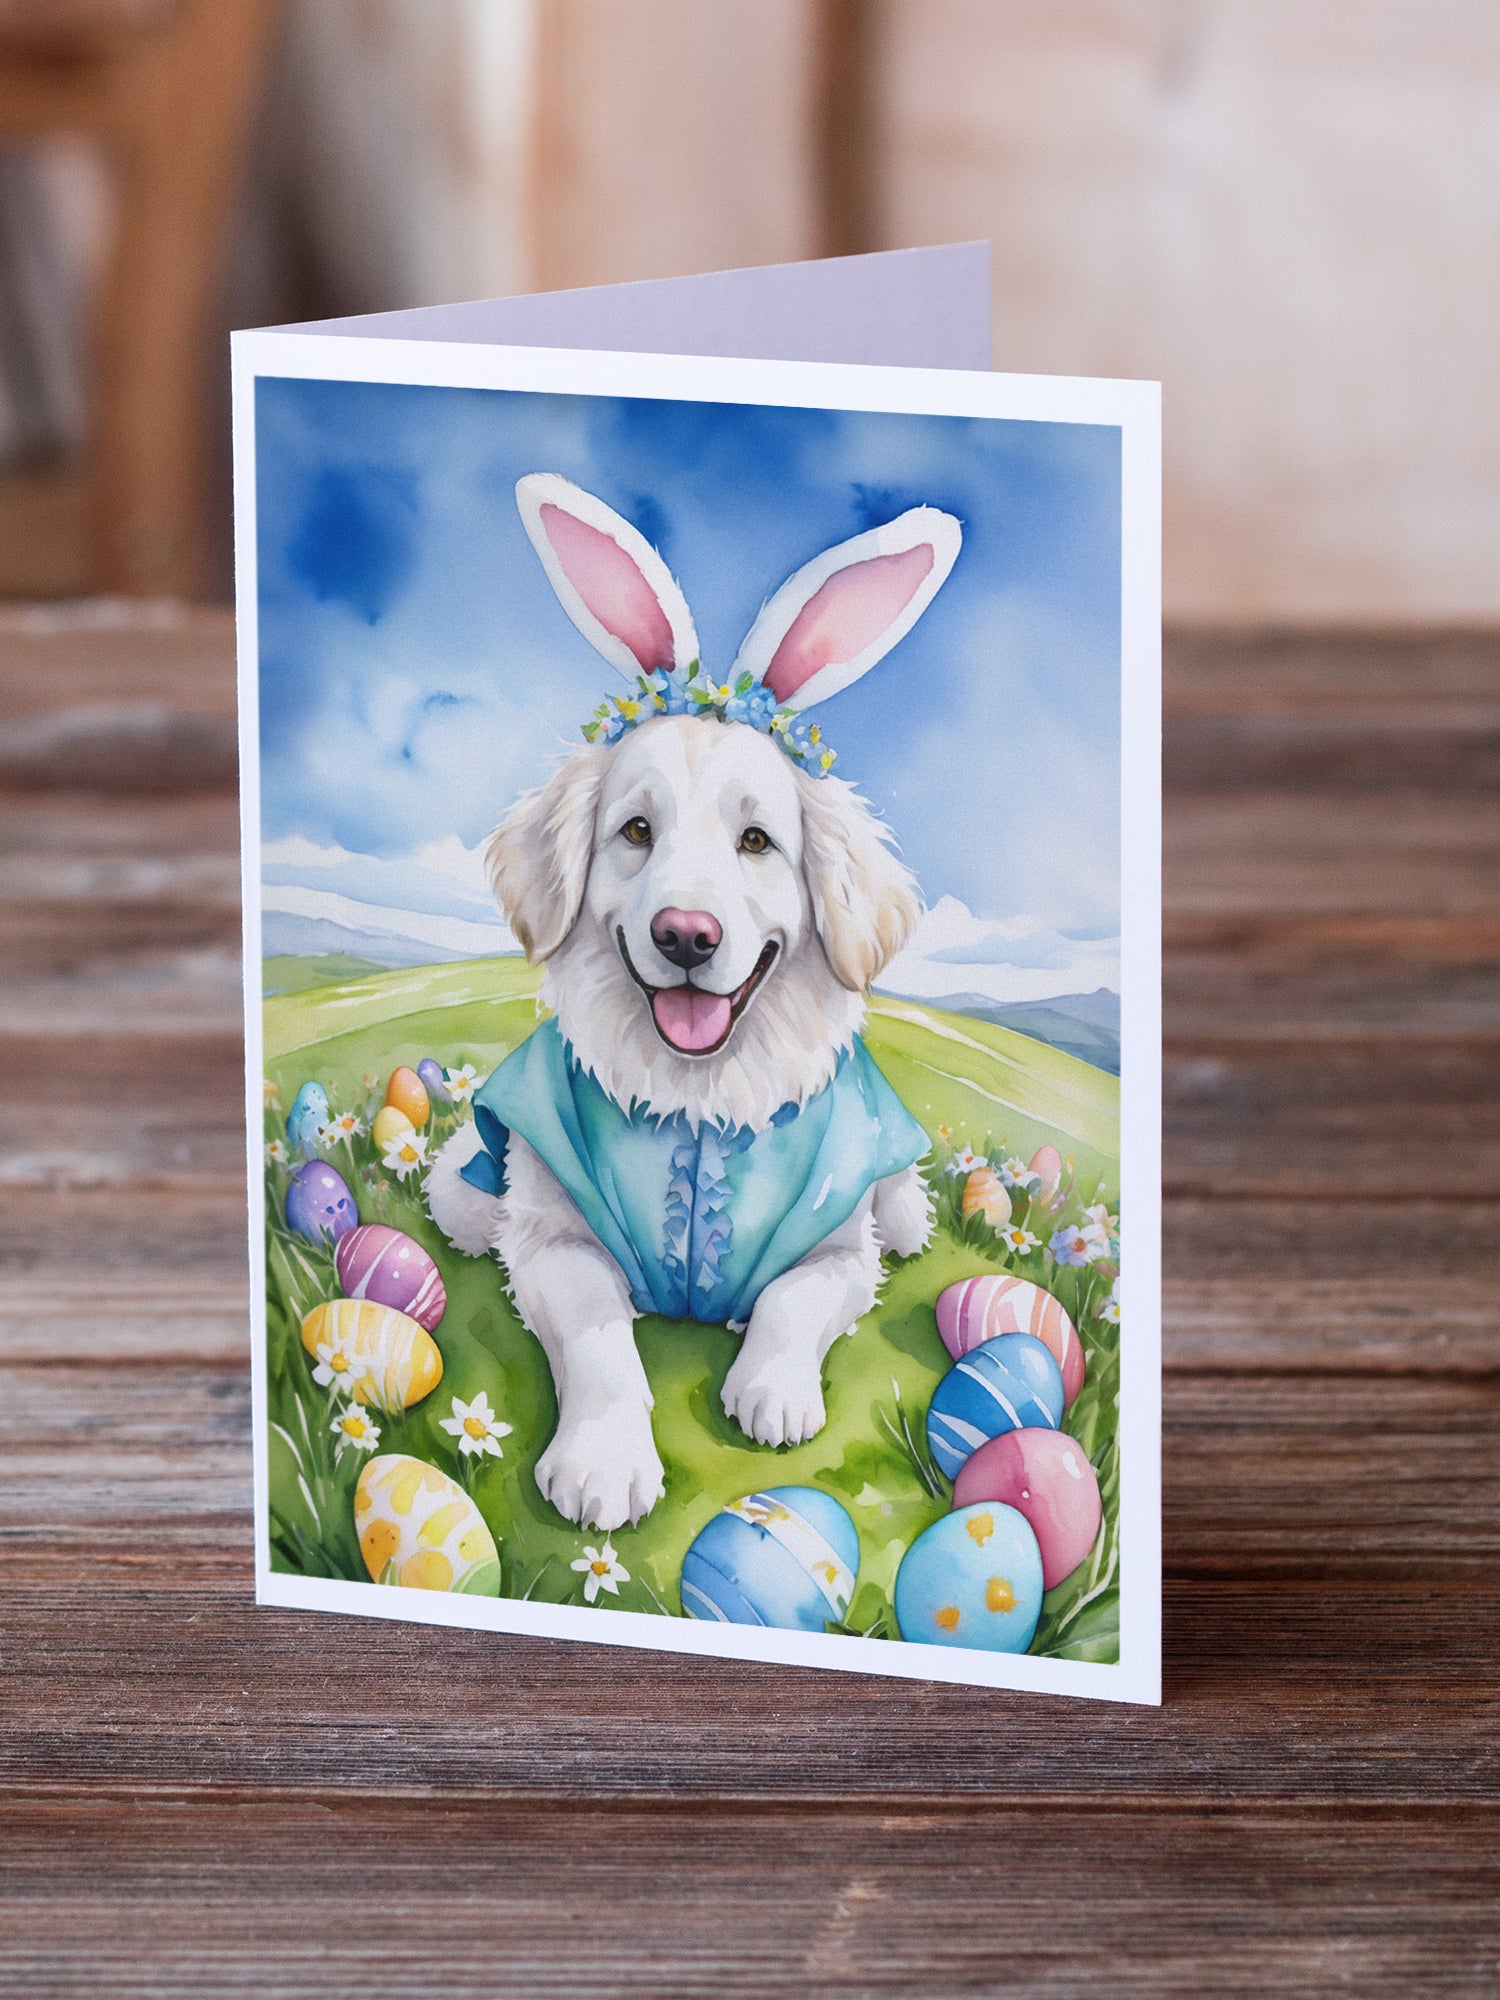 Kuvasz Easter Egg Hunt Greeting Cards Pack of 8